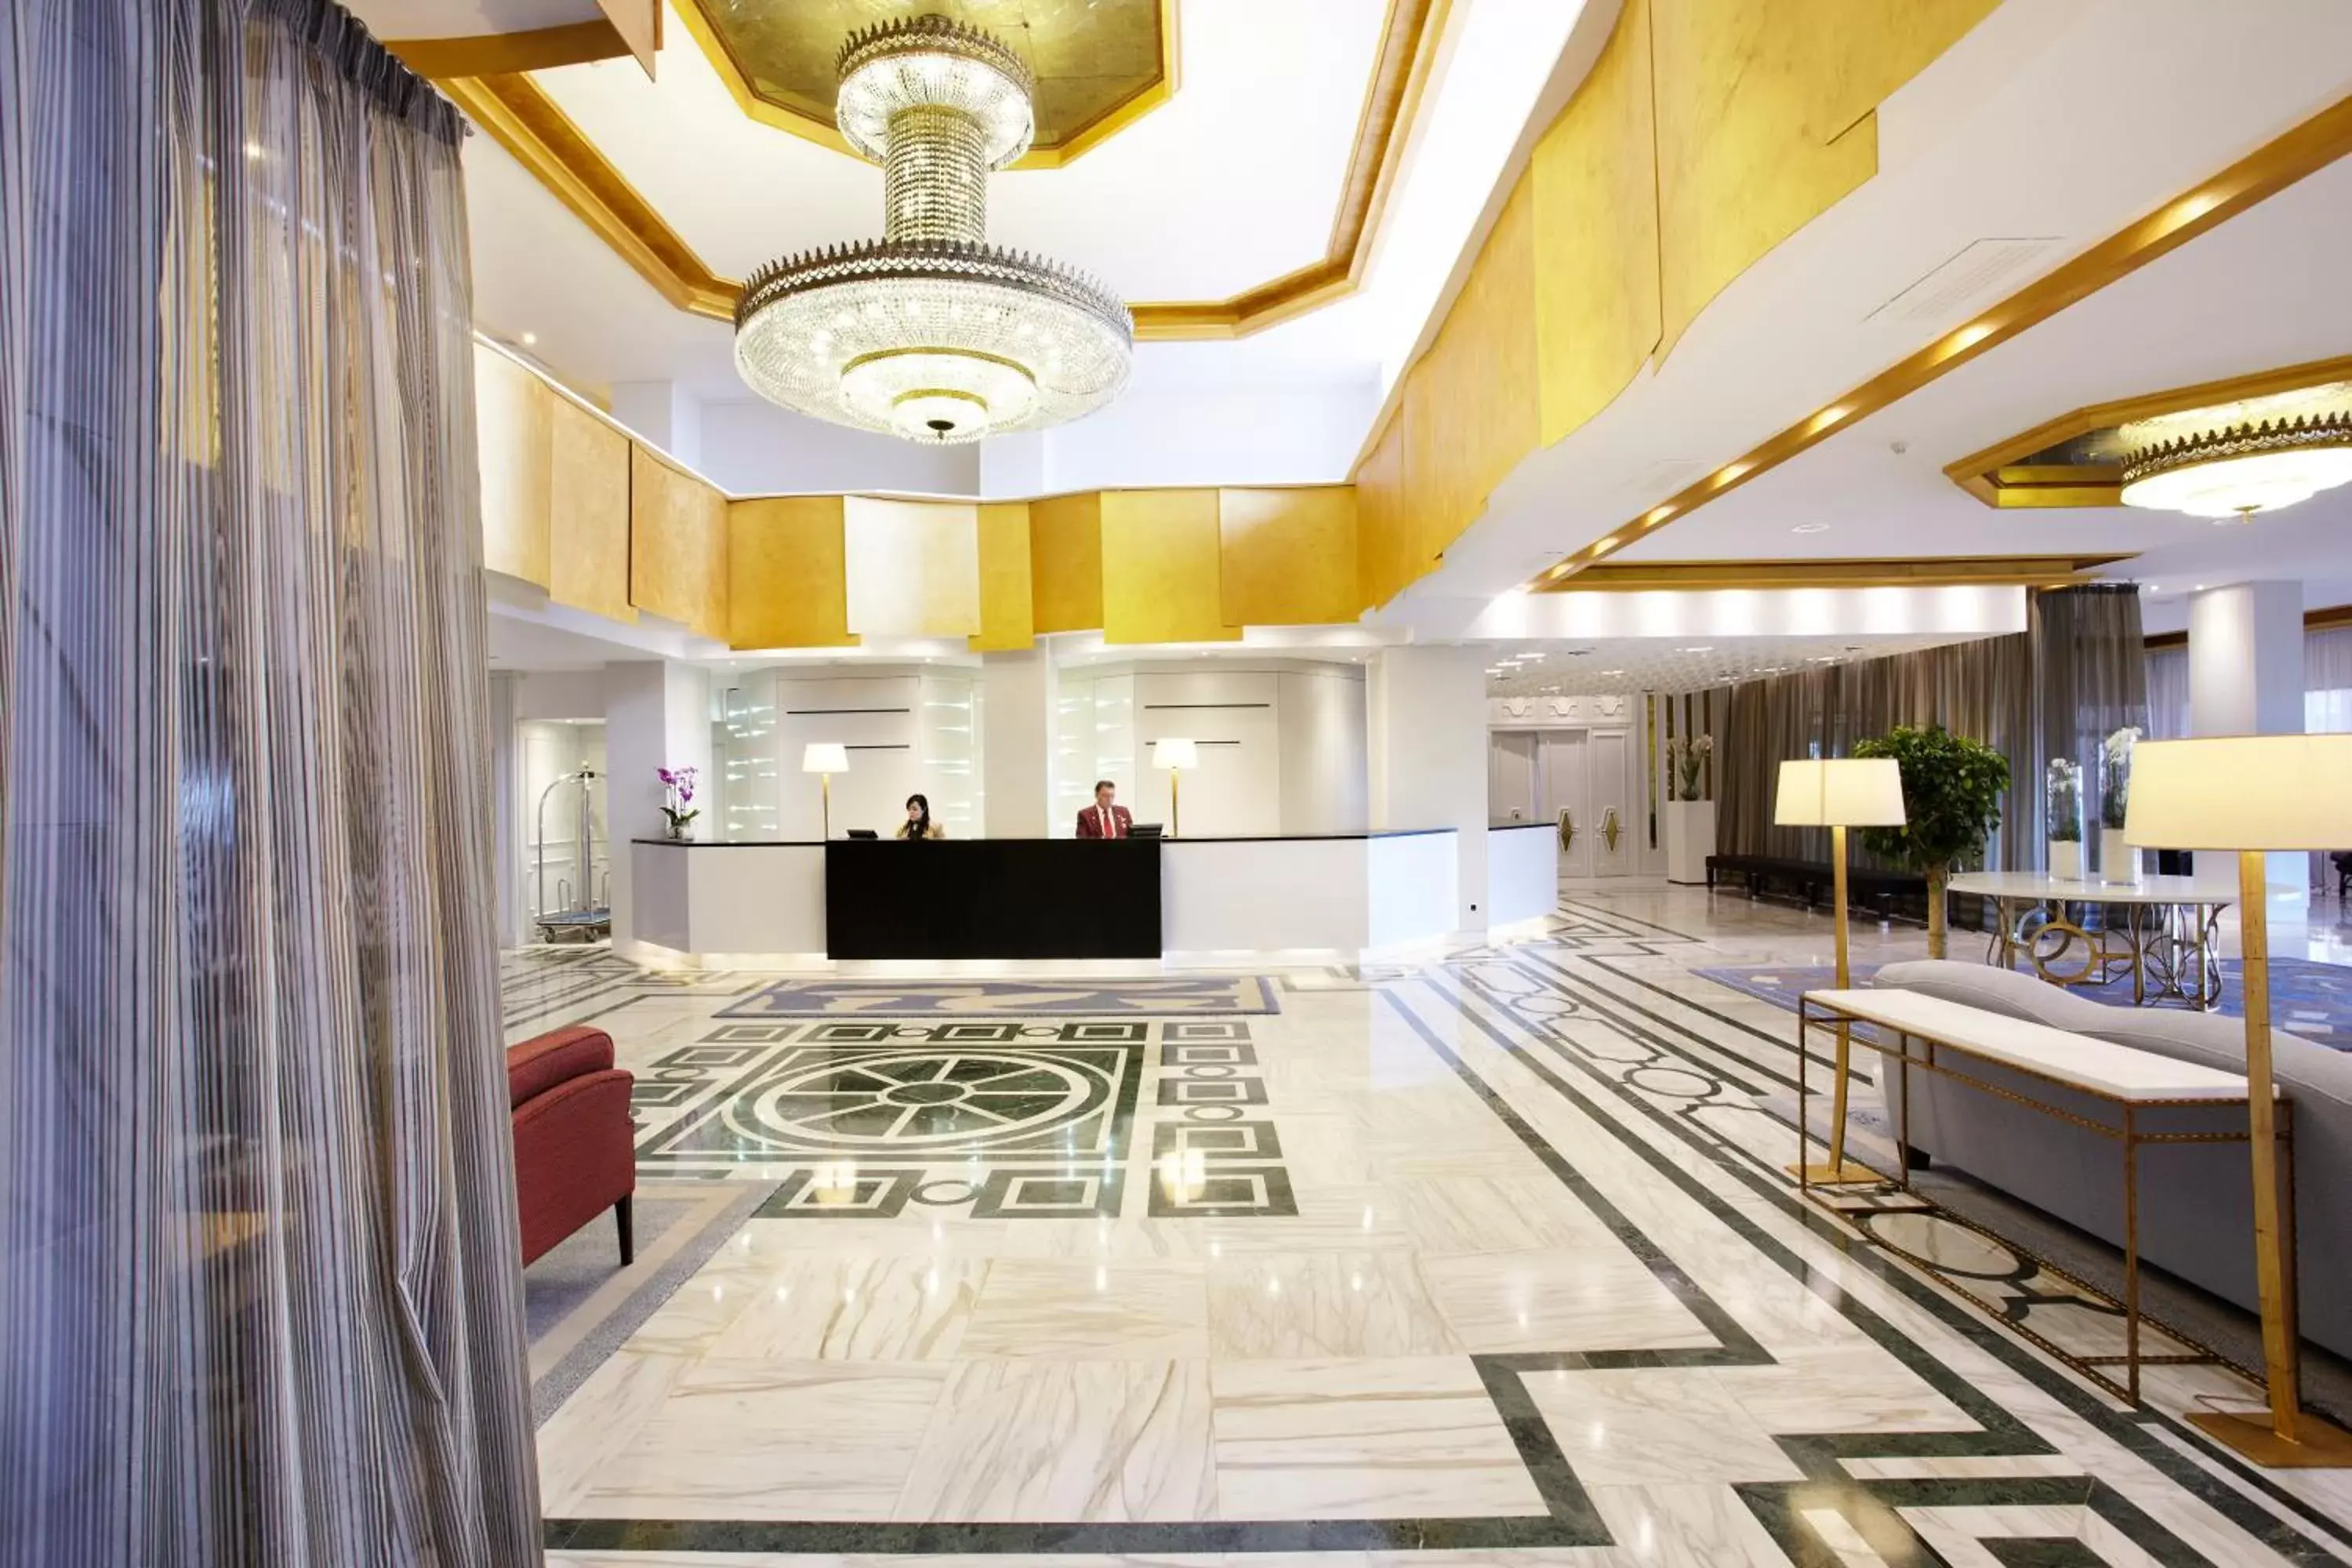 Lobby or reception, Lobby/Reception in GPRO Valparaiso Palace & Spa